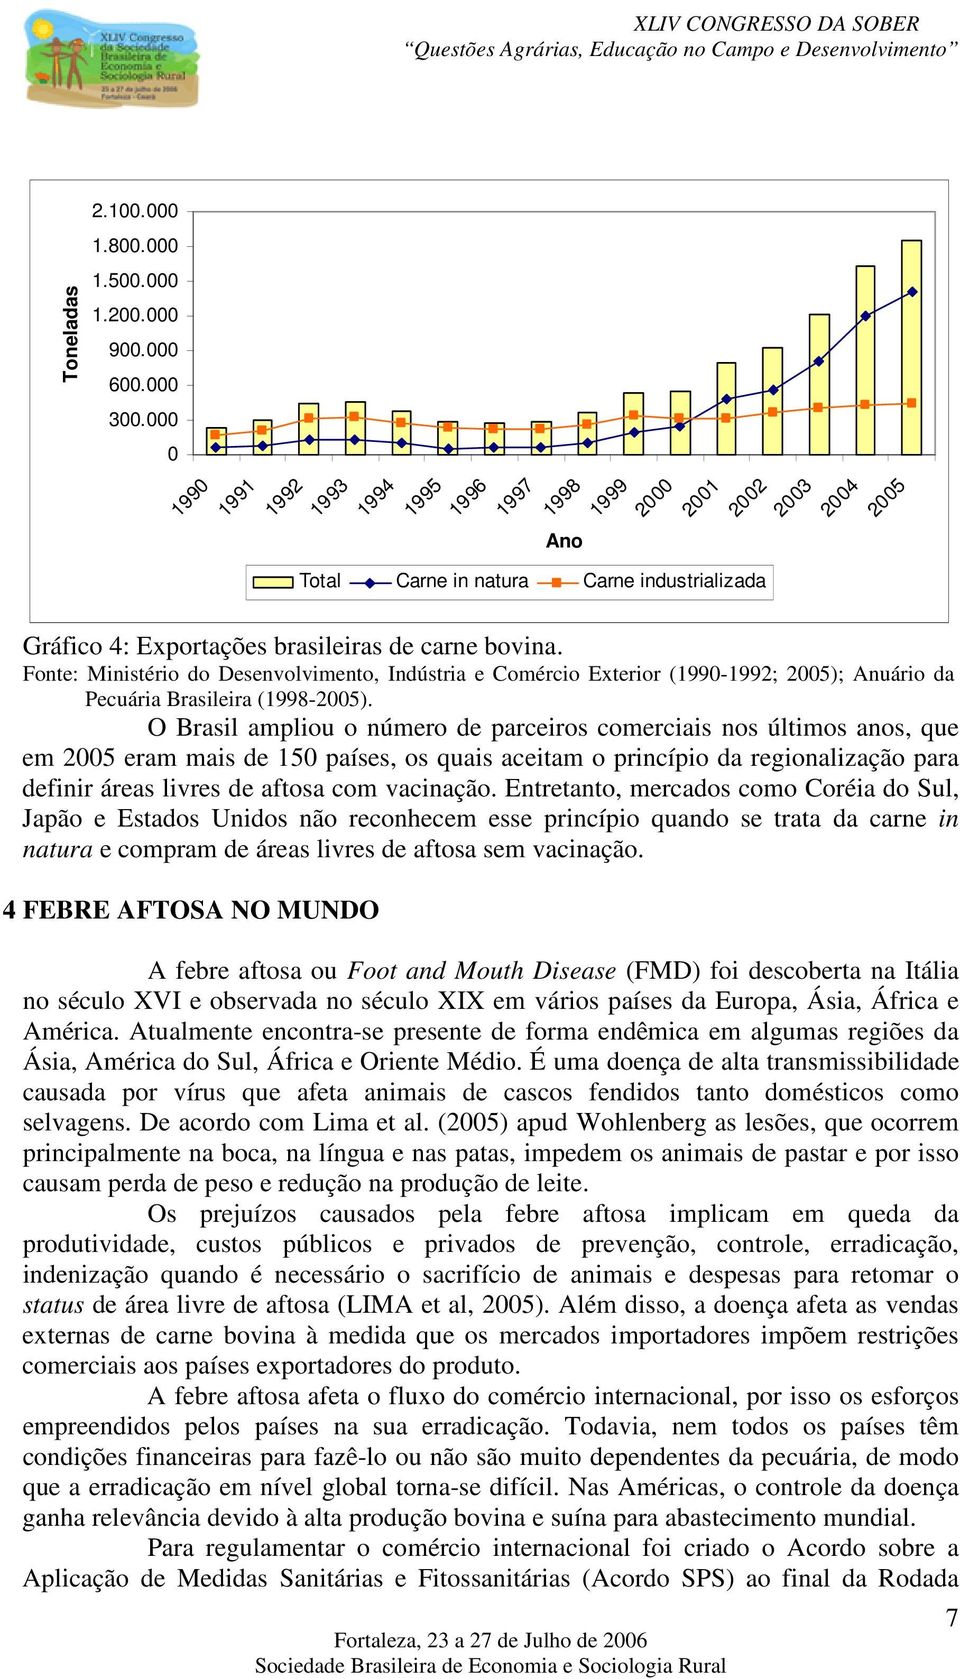 Fonte: Ministério do Desenvolvimento, Indústria e Comércio Exterior (1990-1992; 2005); Anuário da Pecuária Brasileira (1998-2005).